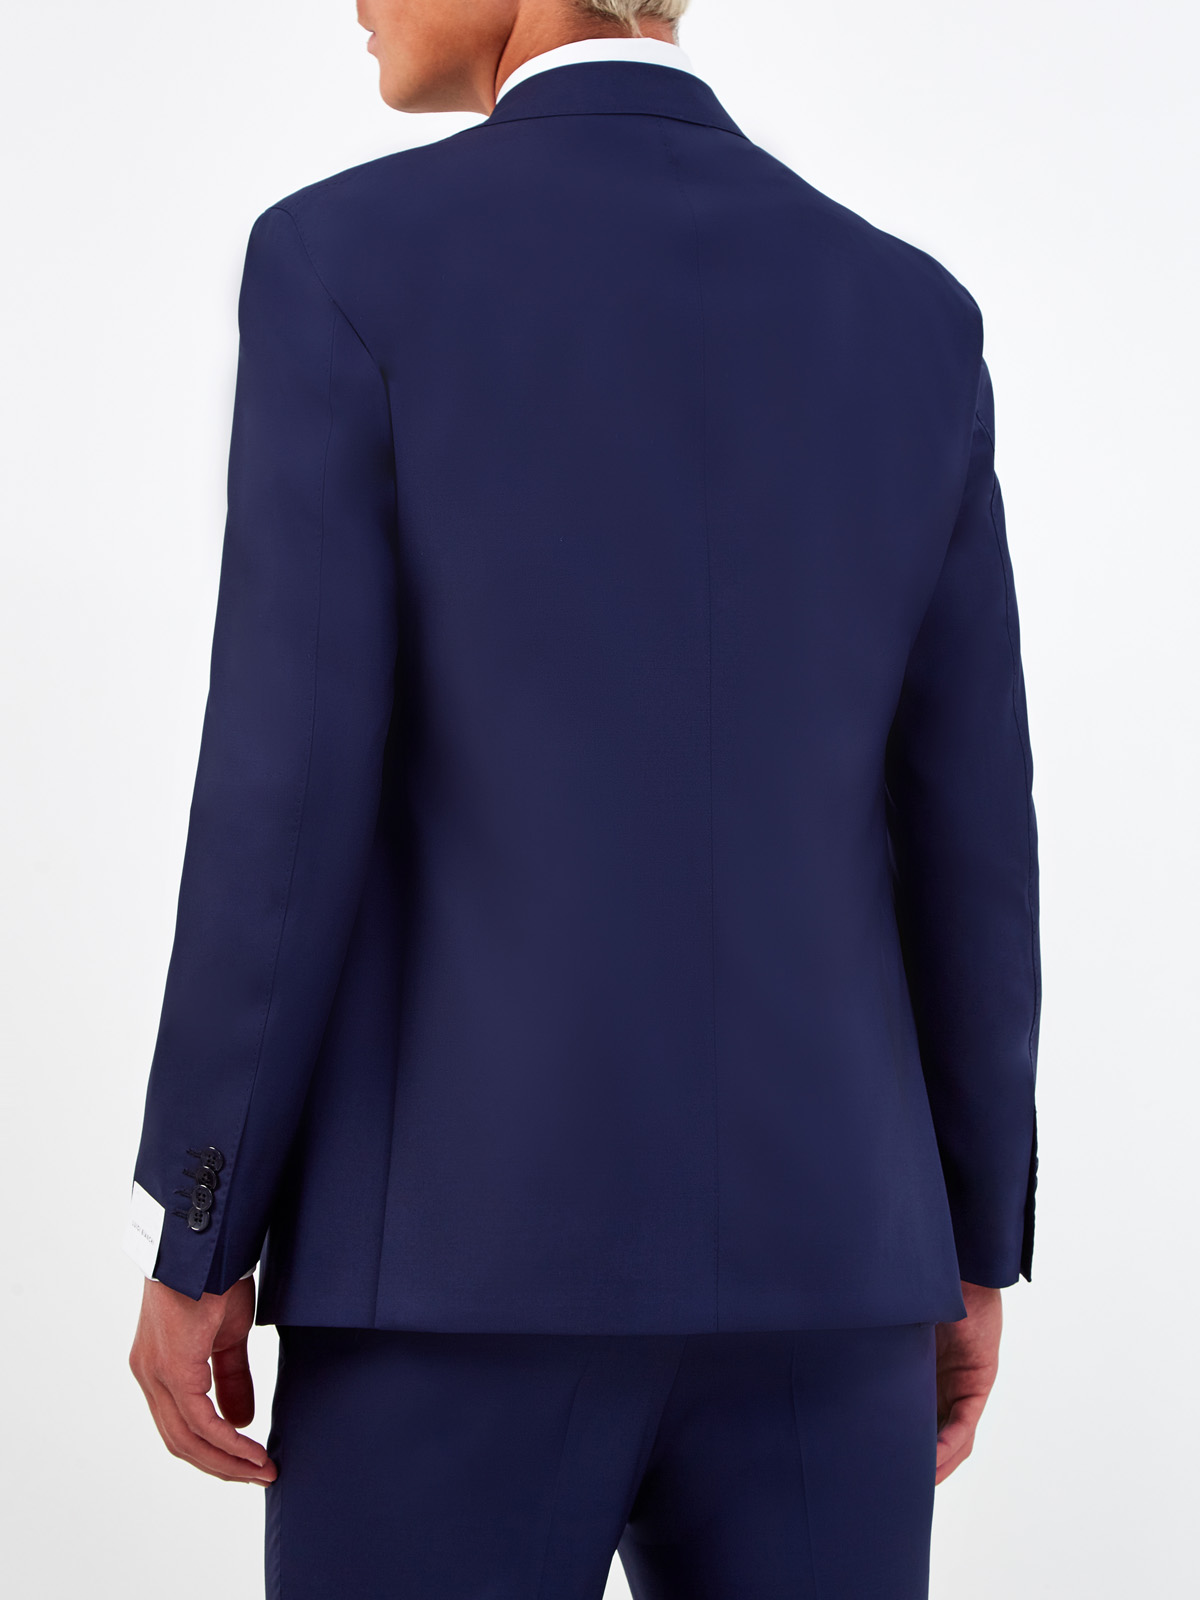 Шерстяной пиджак ручной работы в классическом стиле L.B.M. 1911, цвет синий, размер 46;52;54 - фото 4